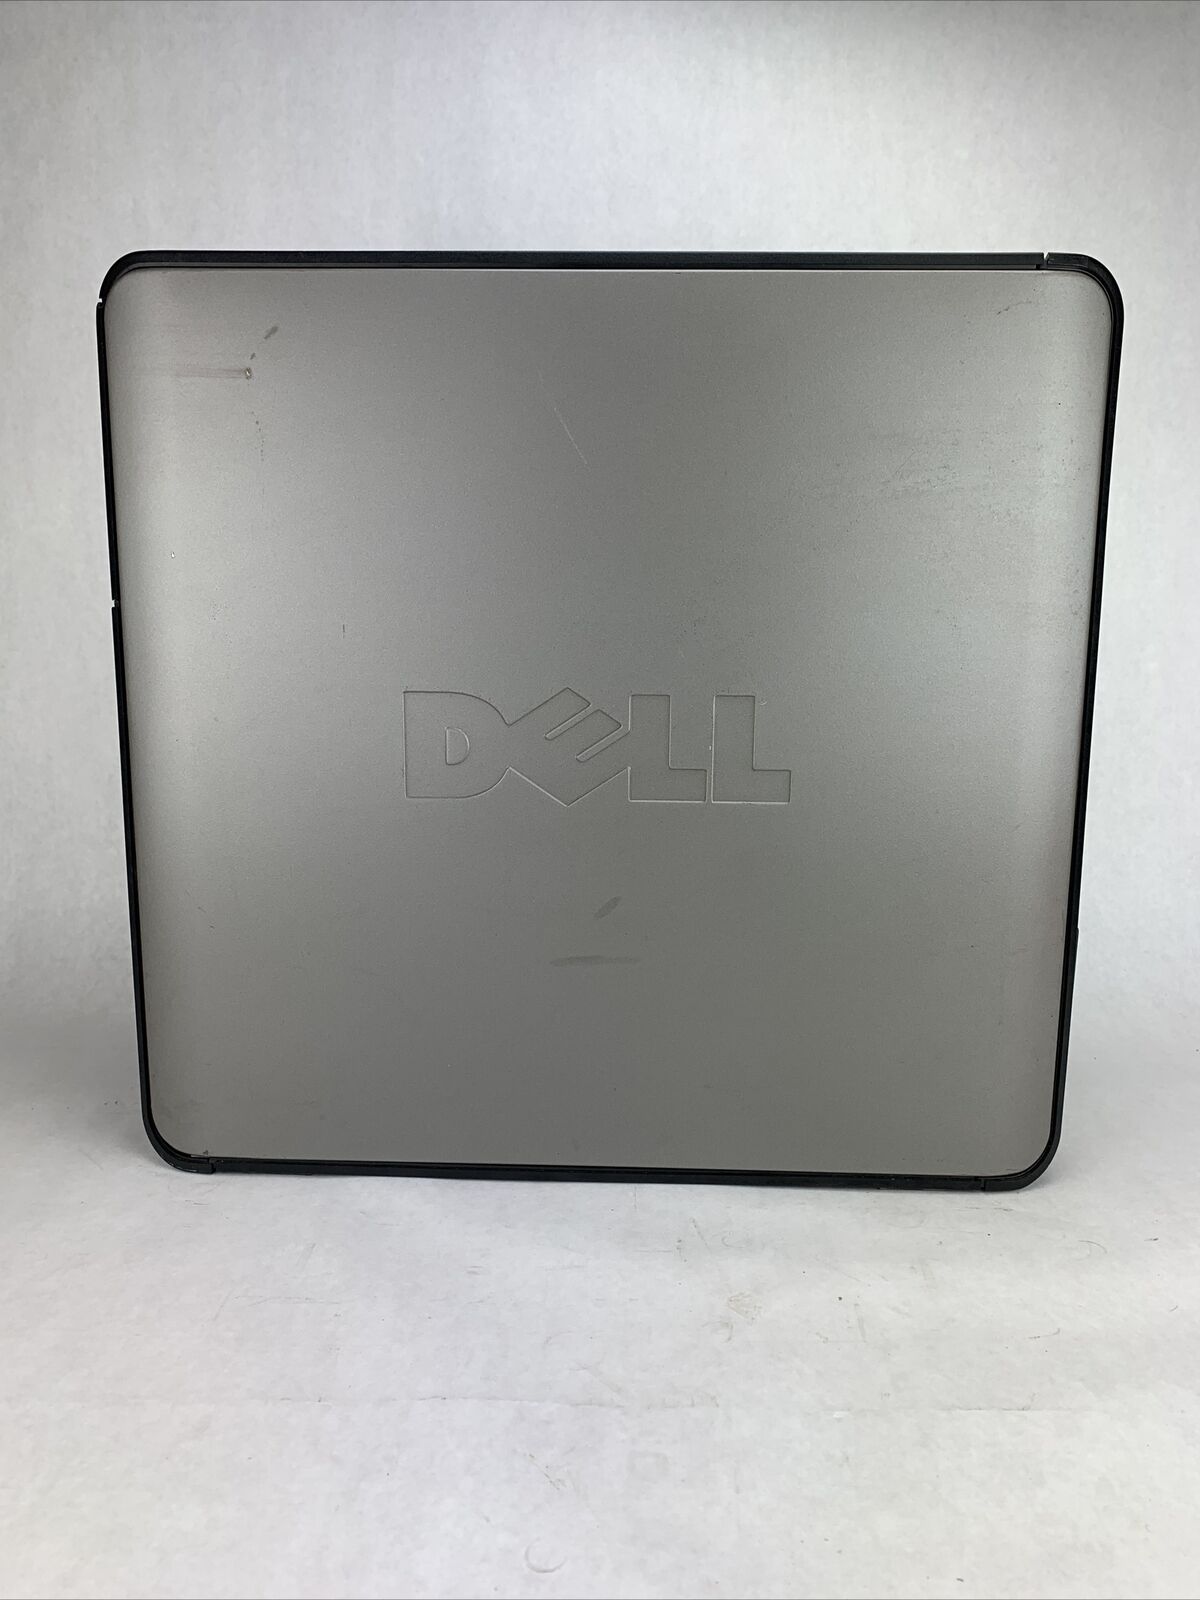 Dell Optiplex 755 MT Intel Core 2 Duo E6500 2.33GHz 1GB RAM No HDD No OS